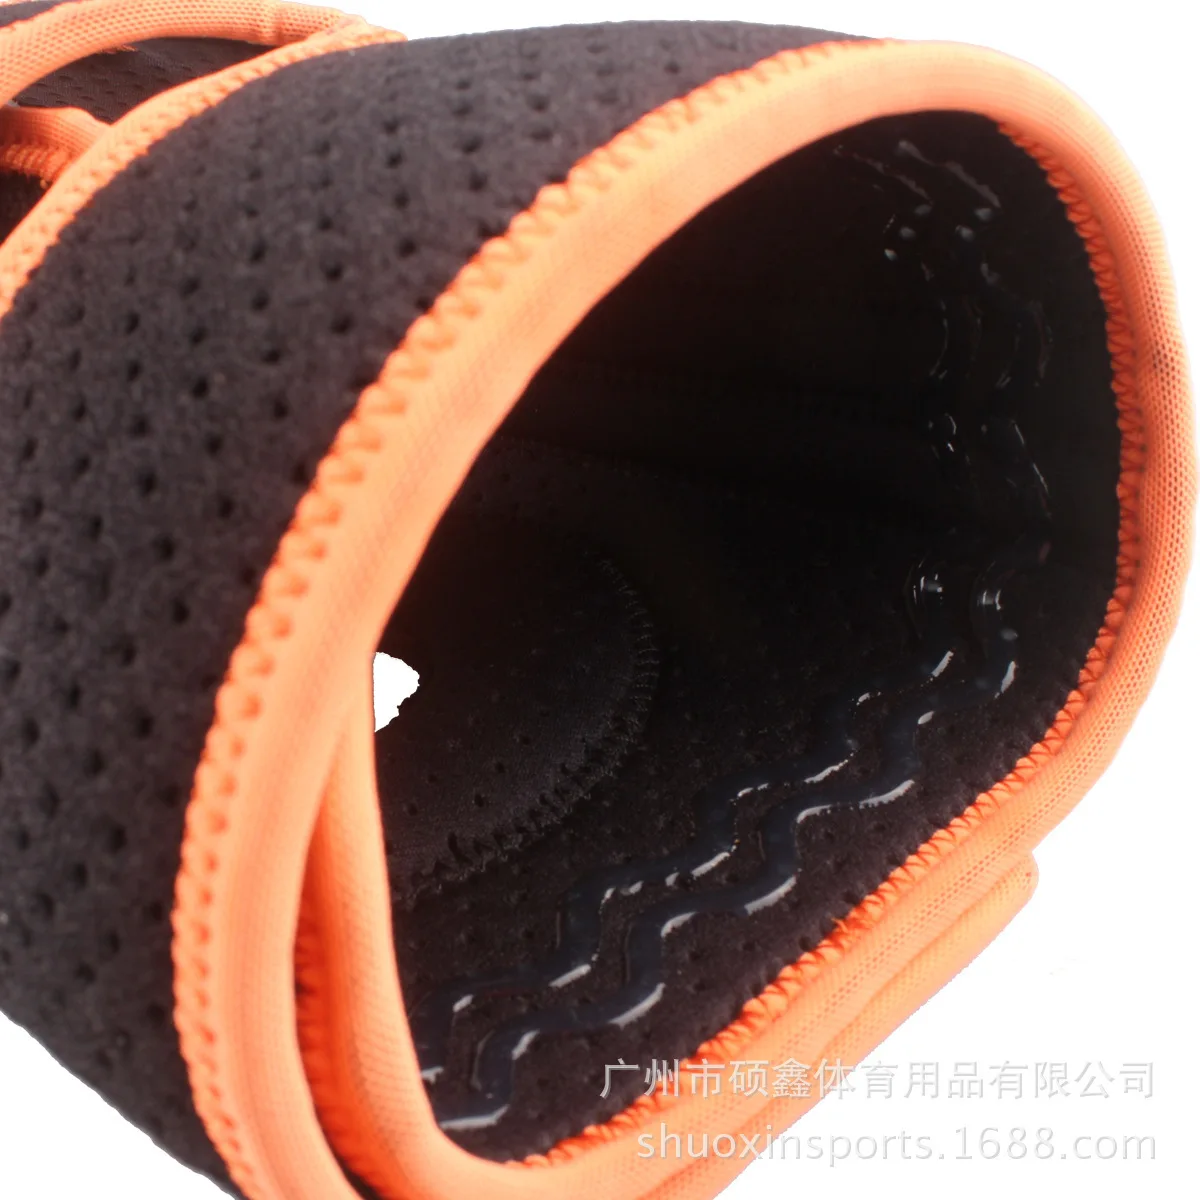 Регулируемые силиконовые версия 4 спортивных штанов на весну; Защищающие колени SX617-O оранжевого и черного цвета в одном комплекте от AliExpress RU&CIS NEW